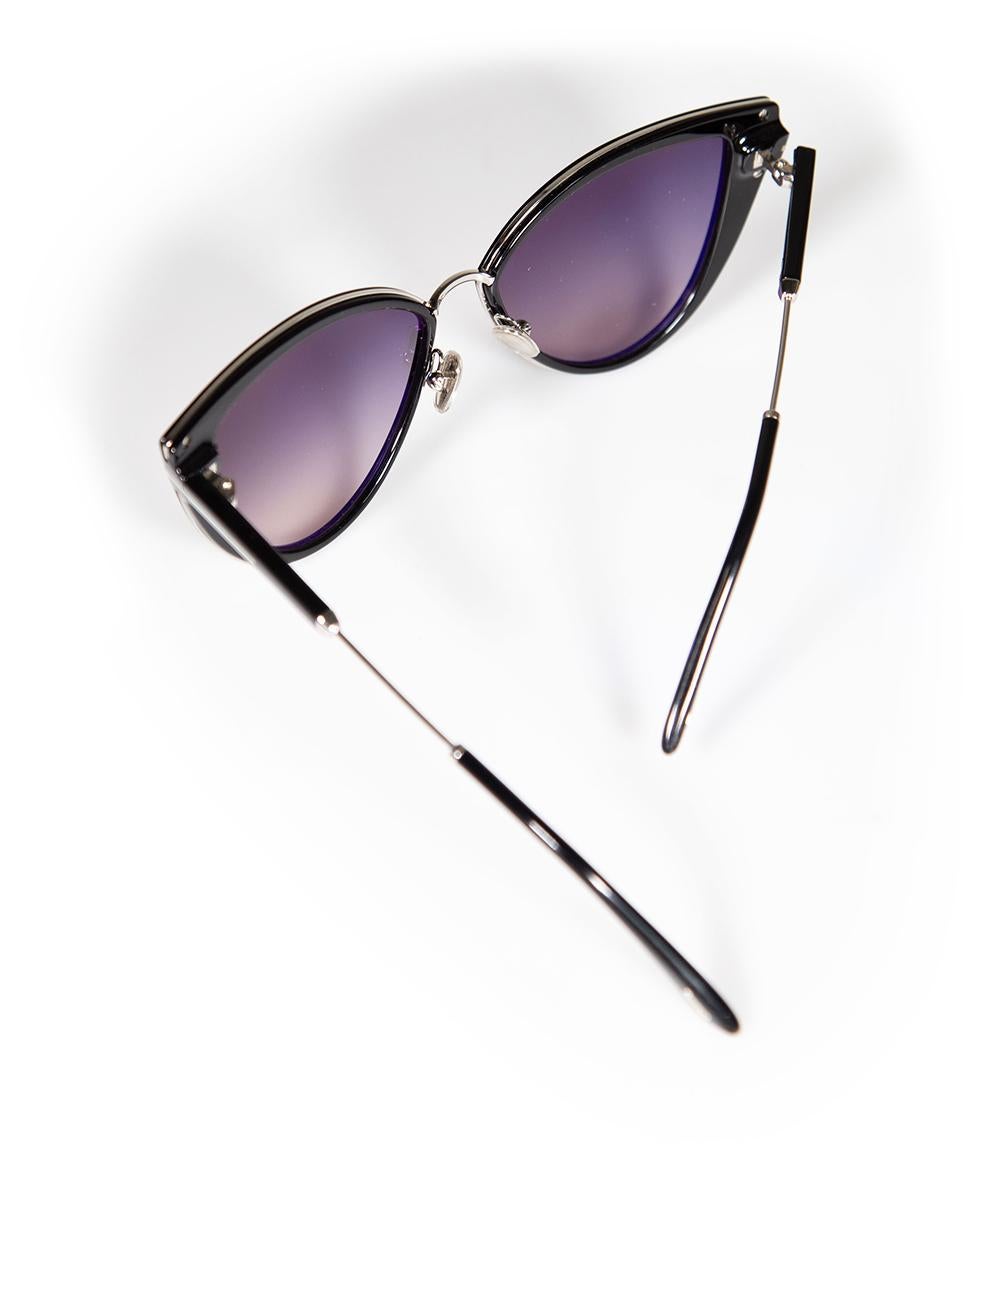 Tom Ford Shiny Black Anjelica Sunglasses For Sale 3